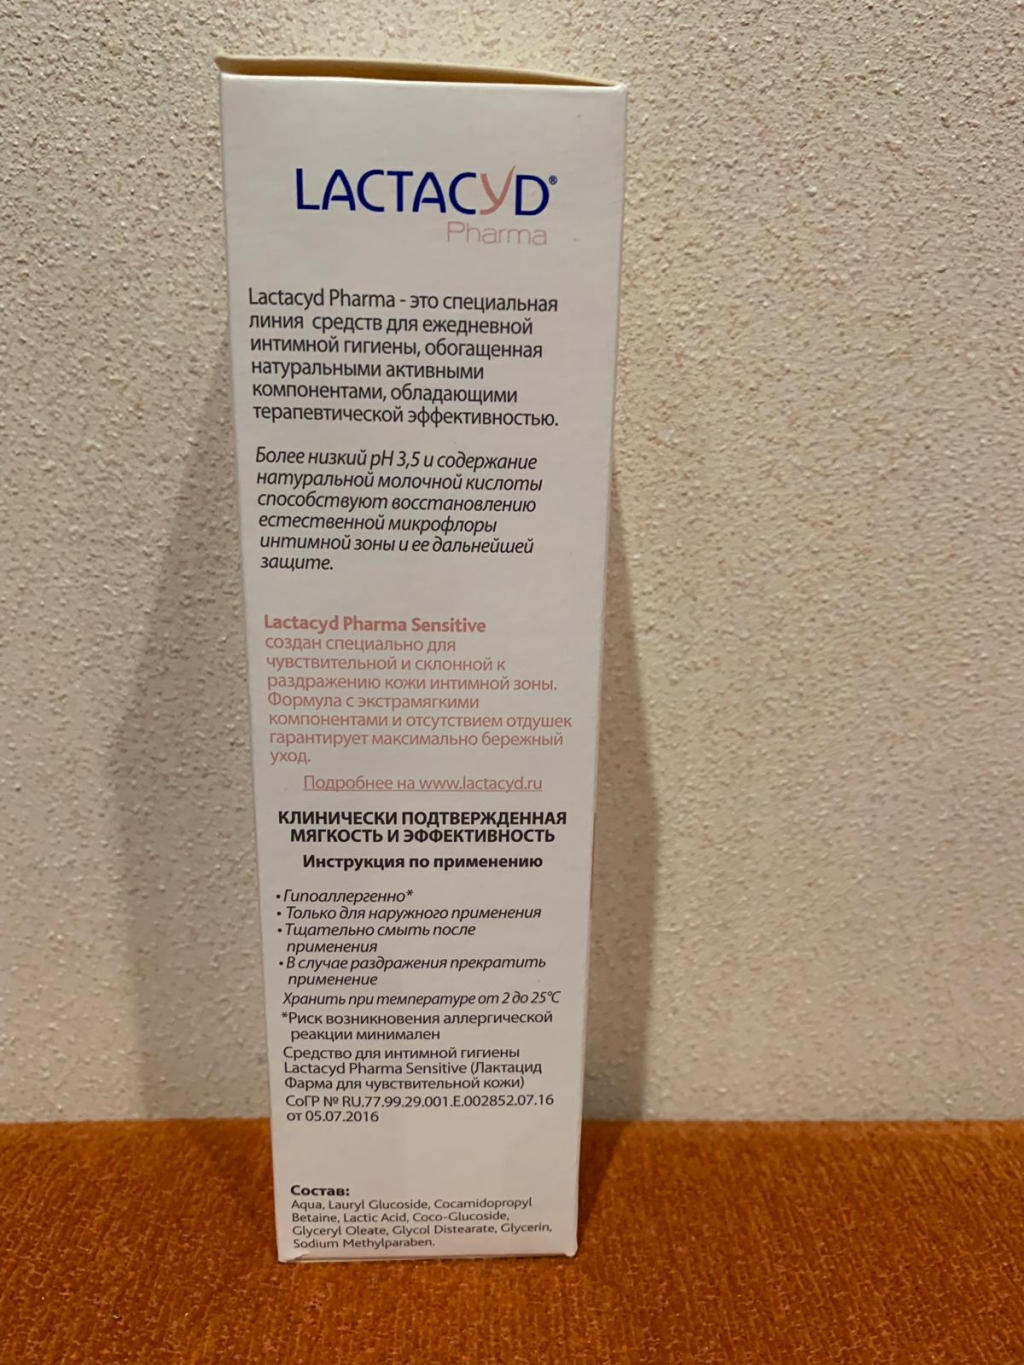 Лактацид Фемина (Lactacyd Femina) - Старалась придраться, но не смогла. Lactacyd Pharma Sensitive.